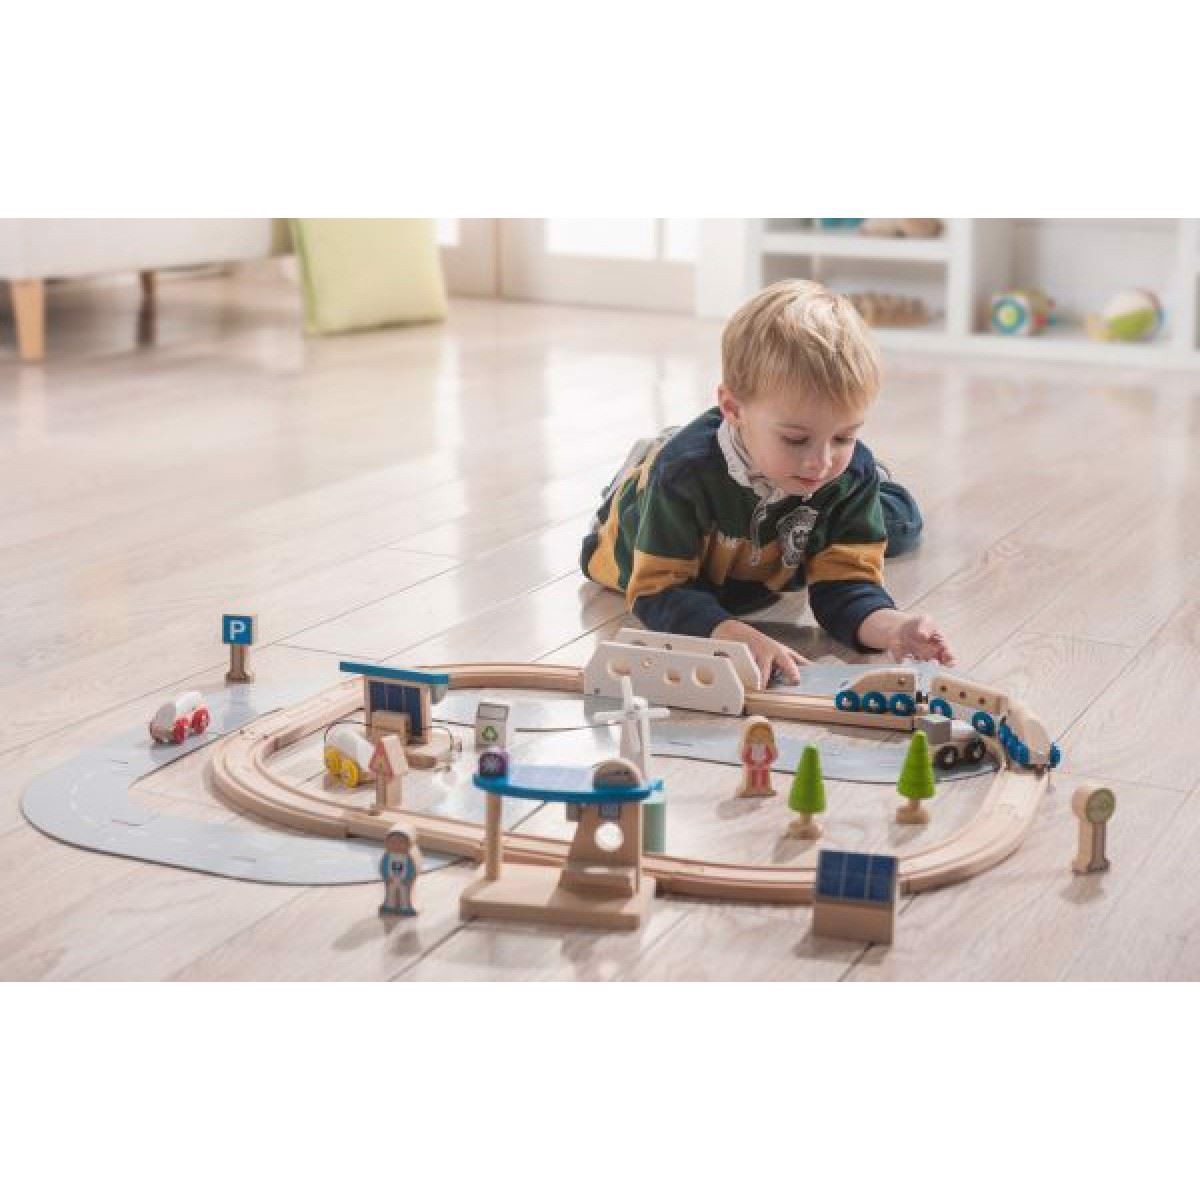 Dreng leger med Økologisk togbane